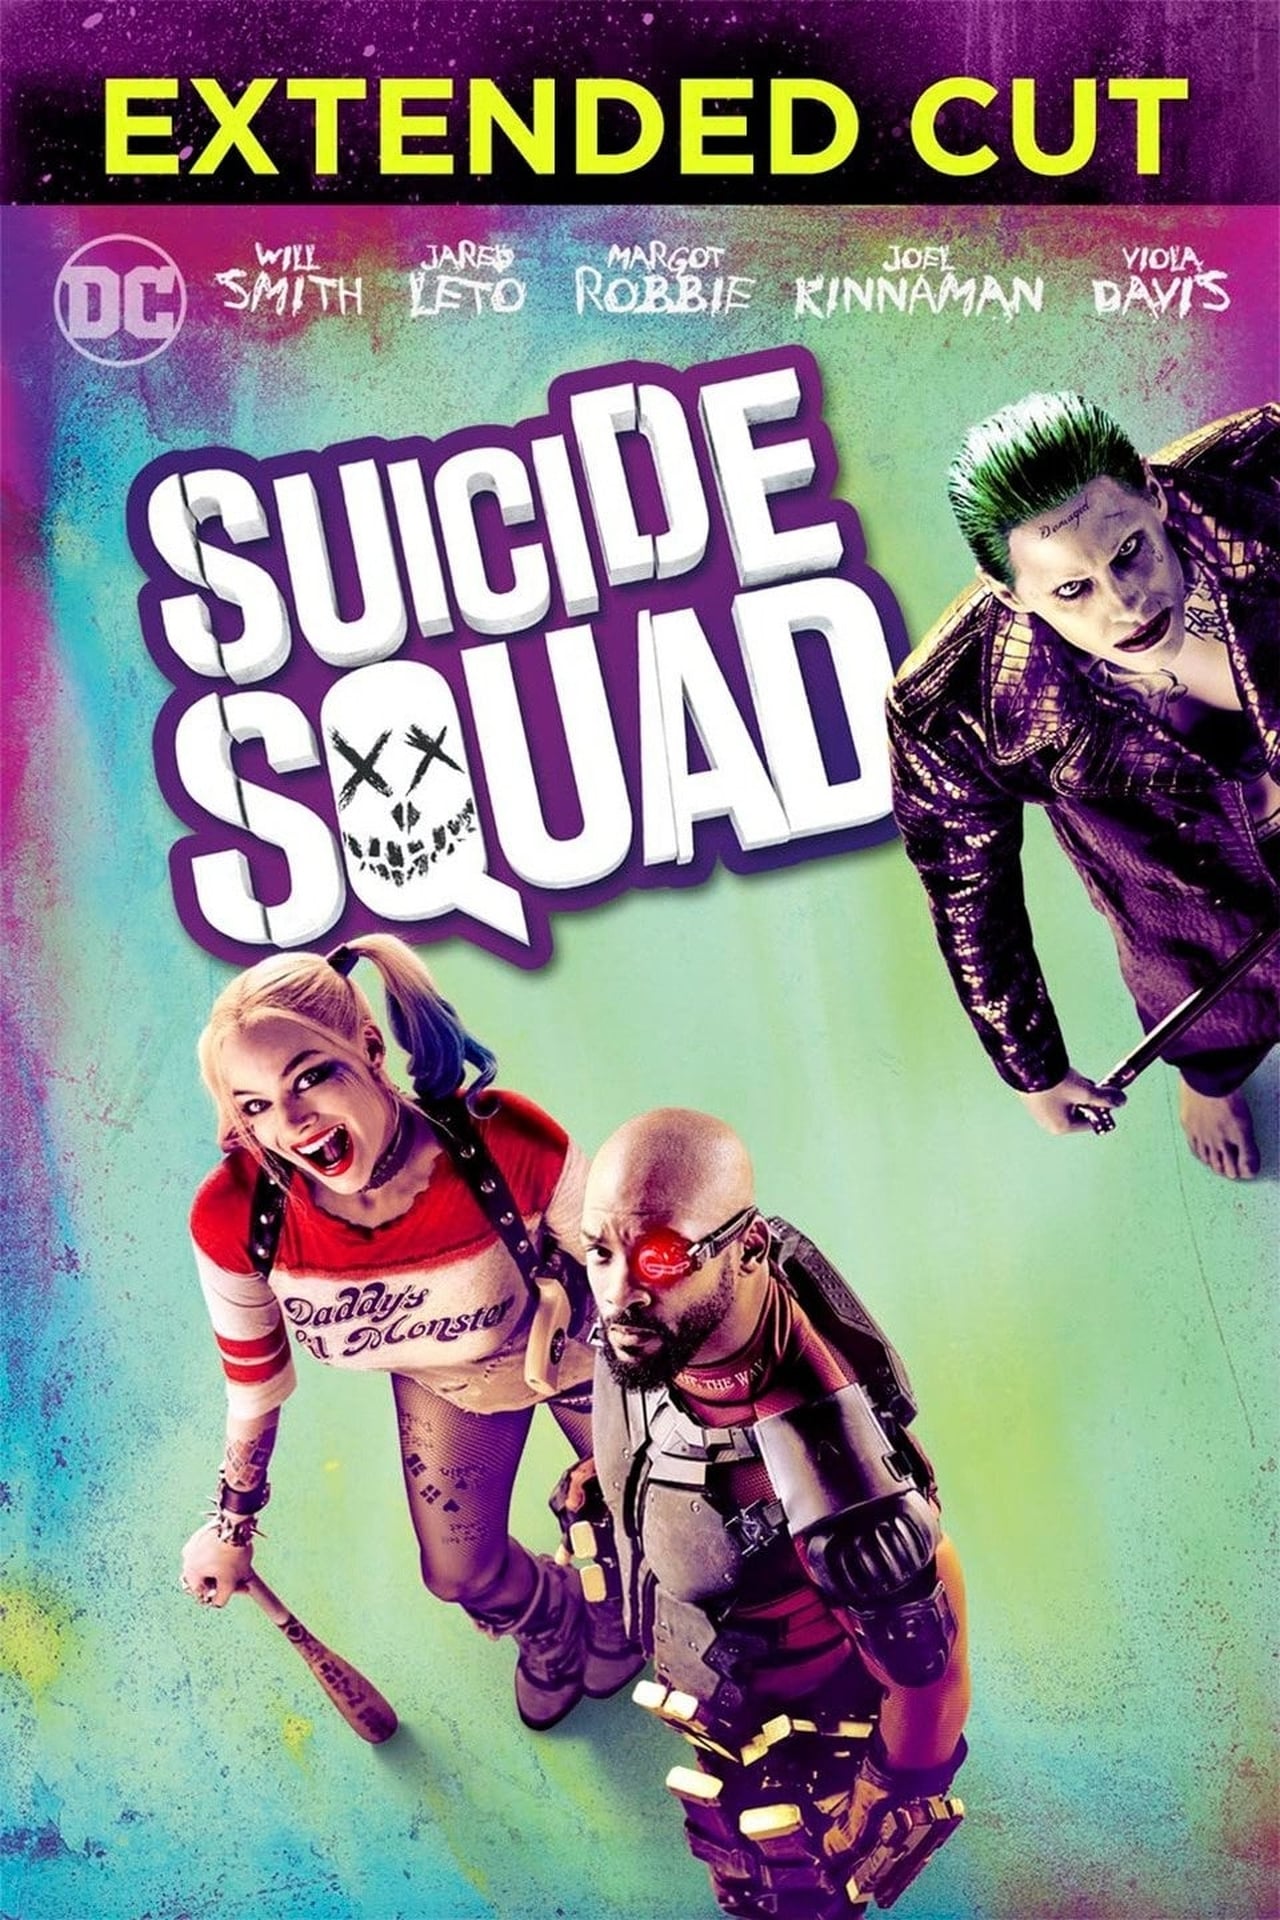 Suicide Squad (2016) Extended Cut 192Kbps 23.976Fps 48Khz 2.0Ch DigitalTV Turkish Audio TAC